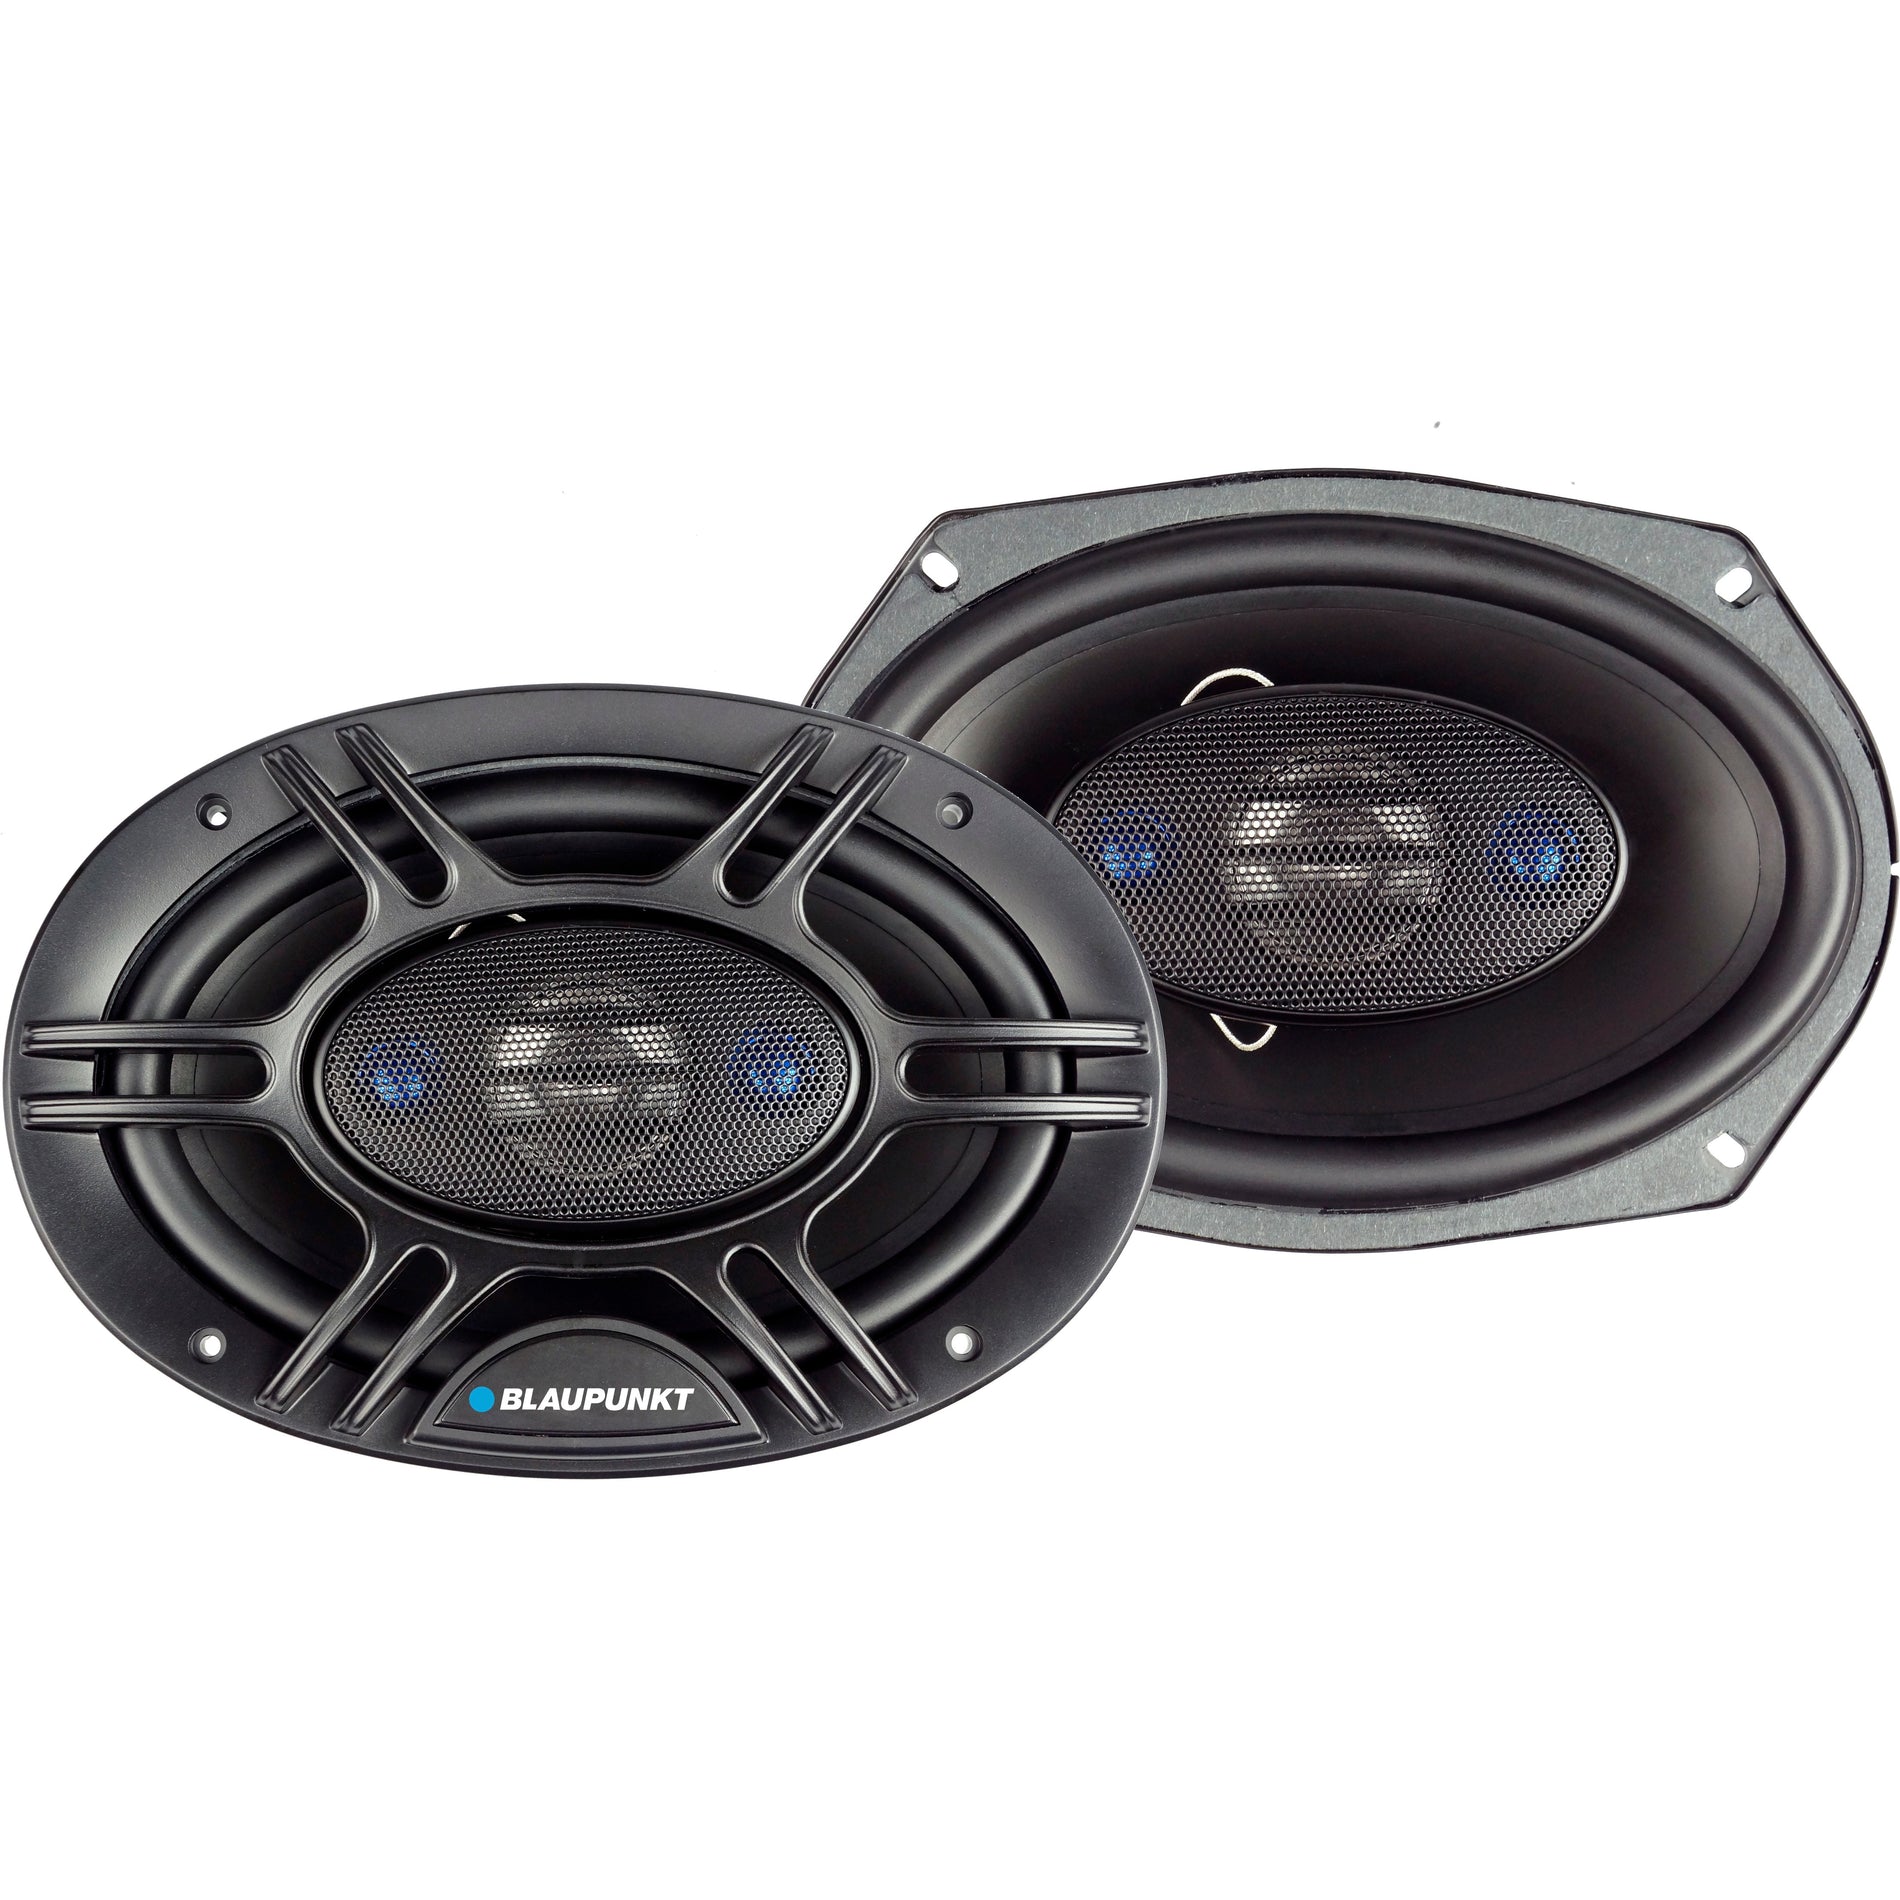 Blaupunkt GTX690 Speaker - High Power 4-Way Car Audio Speaker, 150W RMS Output Power